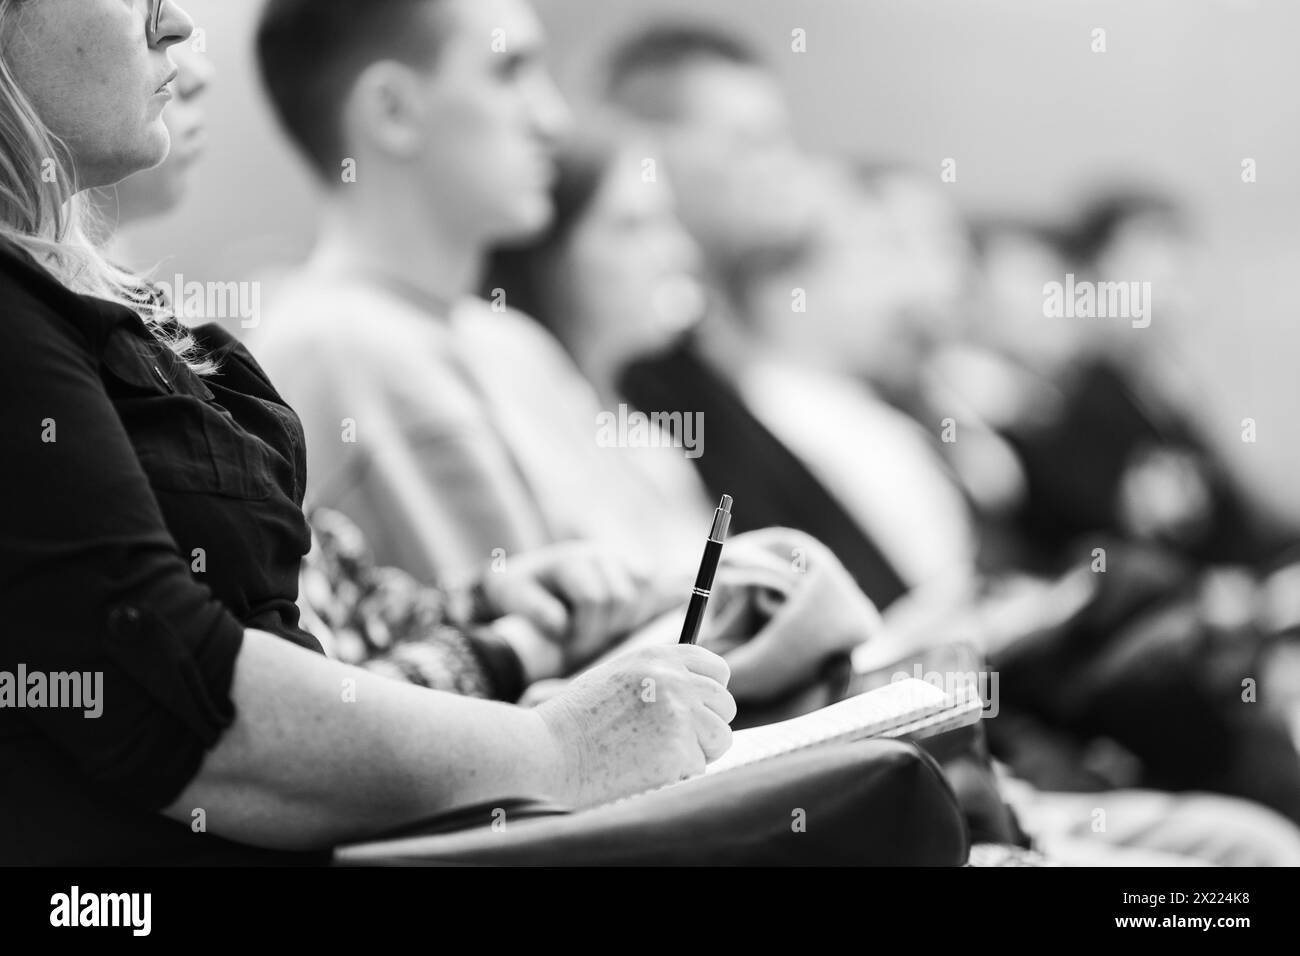 Mains féminines tenant un stylo et un cahier, prenant des notes lors de la conférence. Participants à l'événement dans la salle de conférence. Image en noir et blanc Banque D'Images